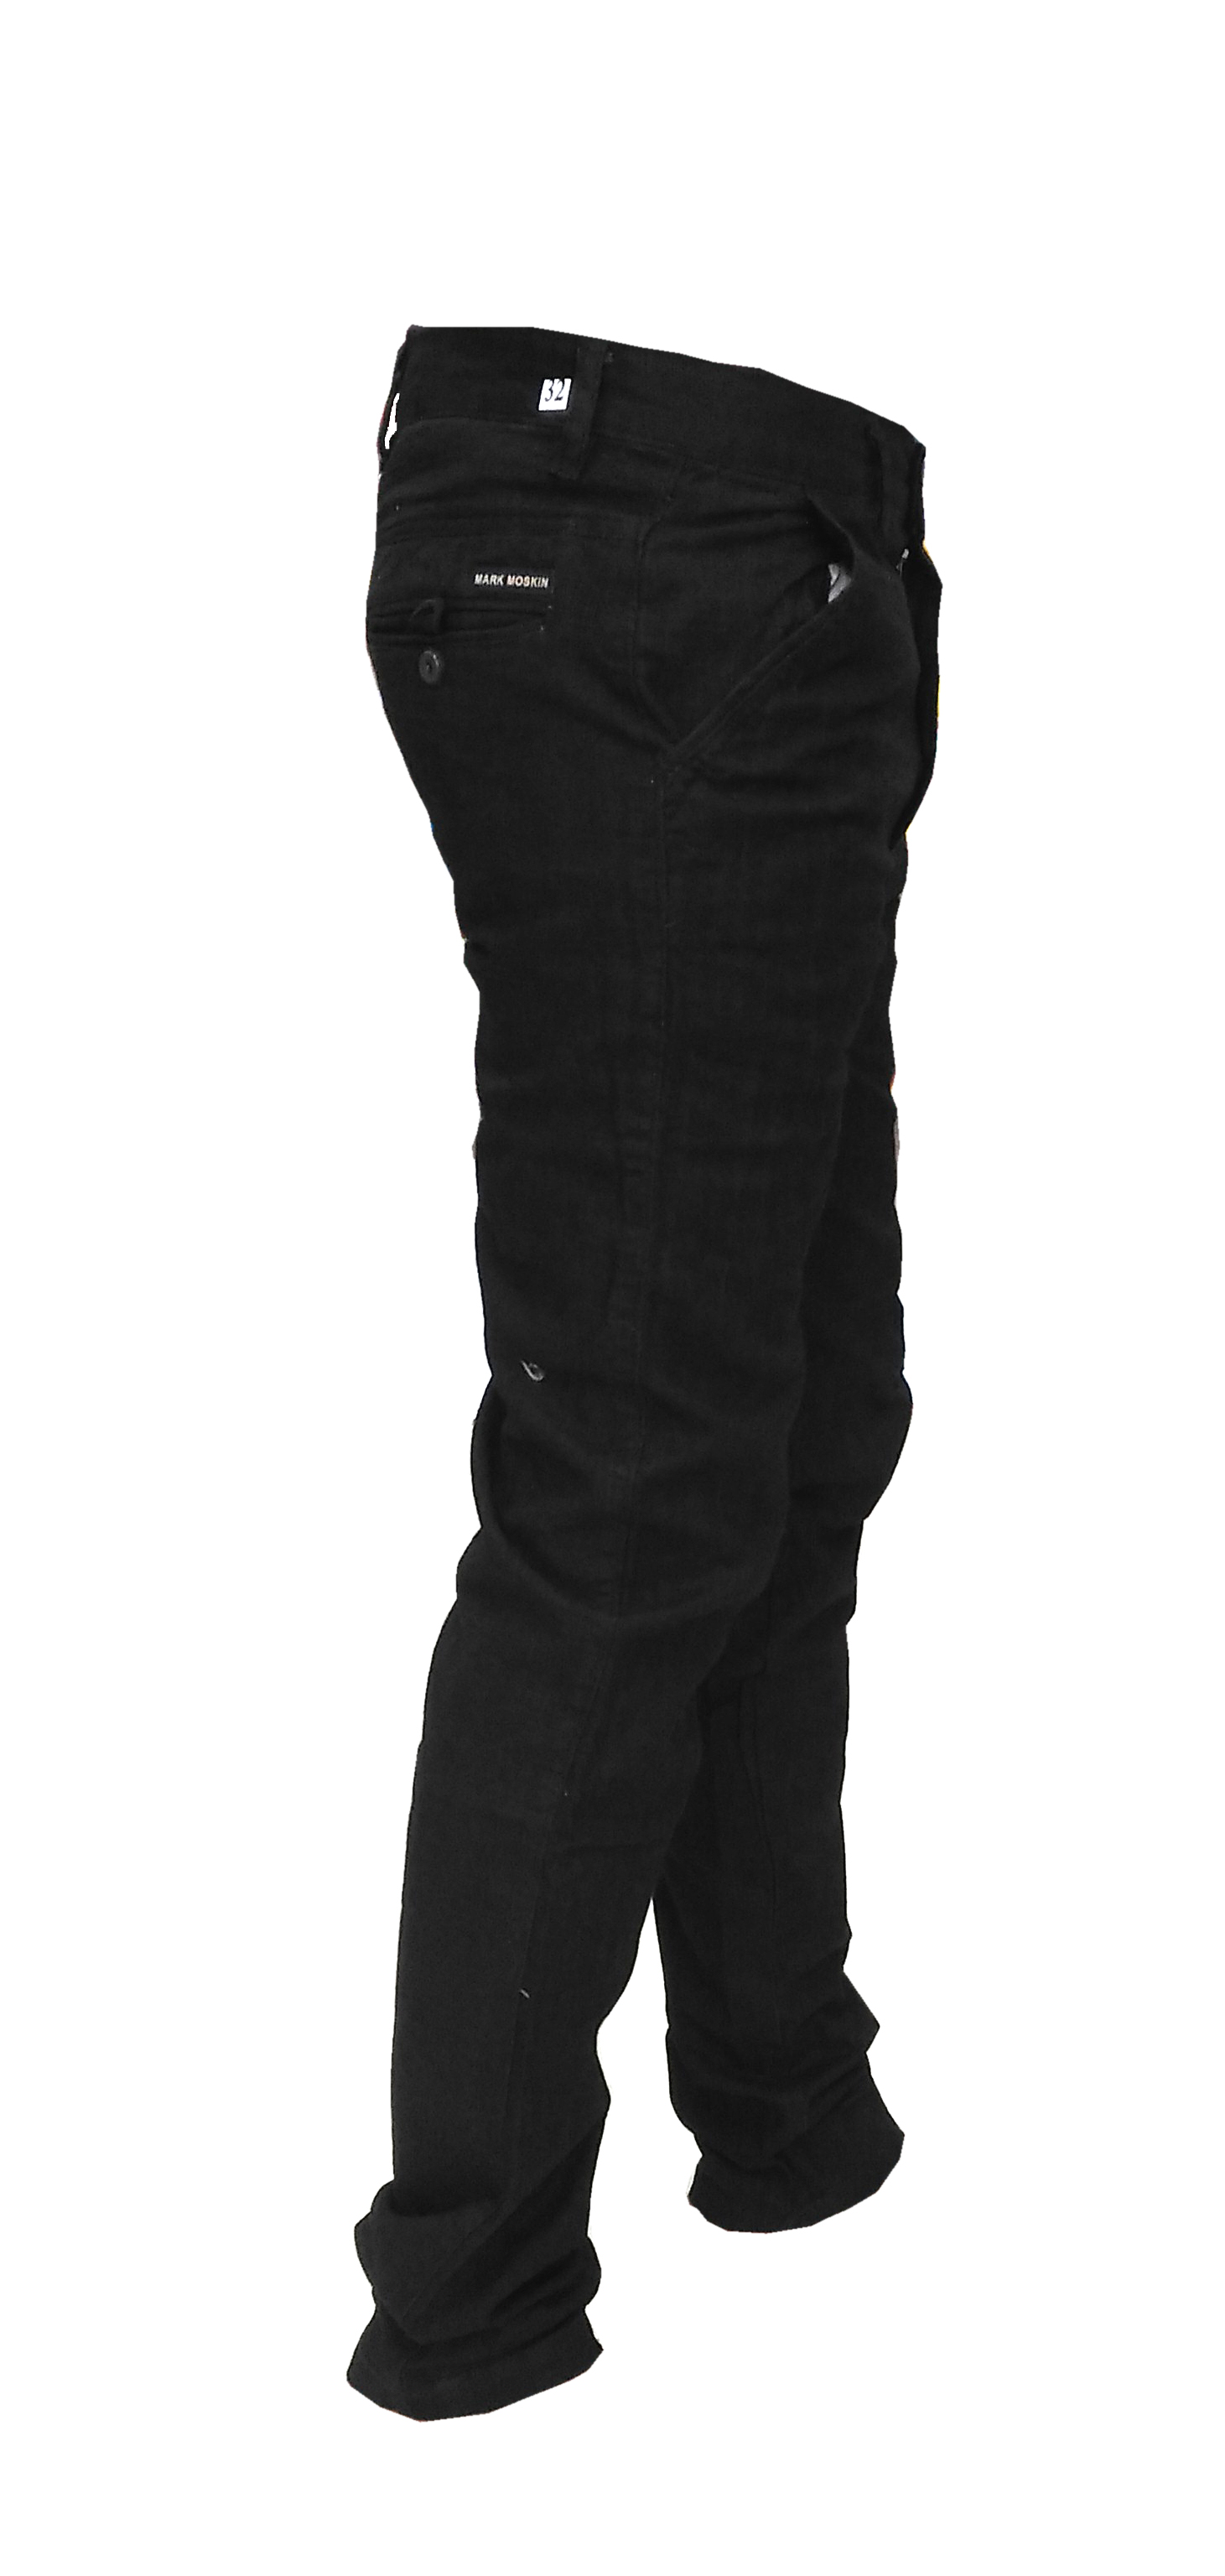 Buy Mark moskin pant brand new black linen trouser pant for men Online ...